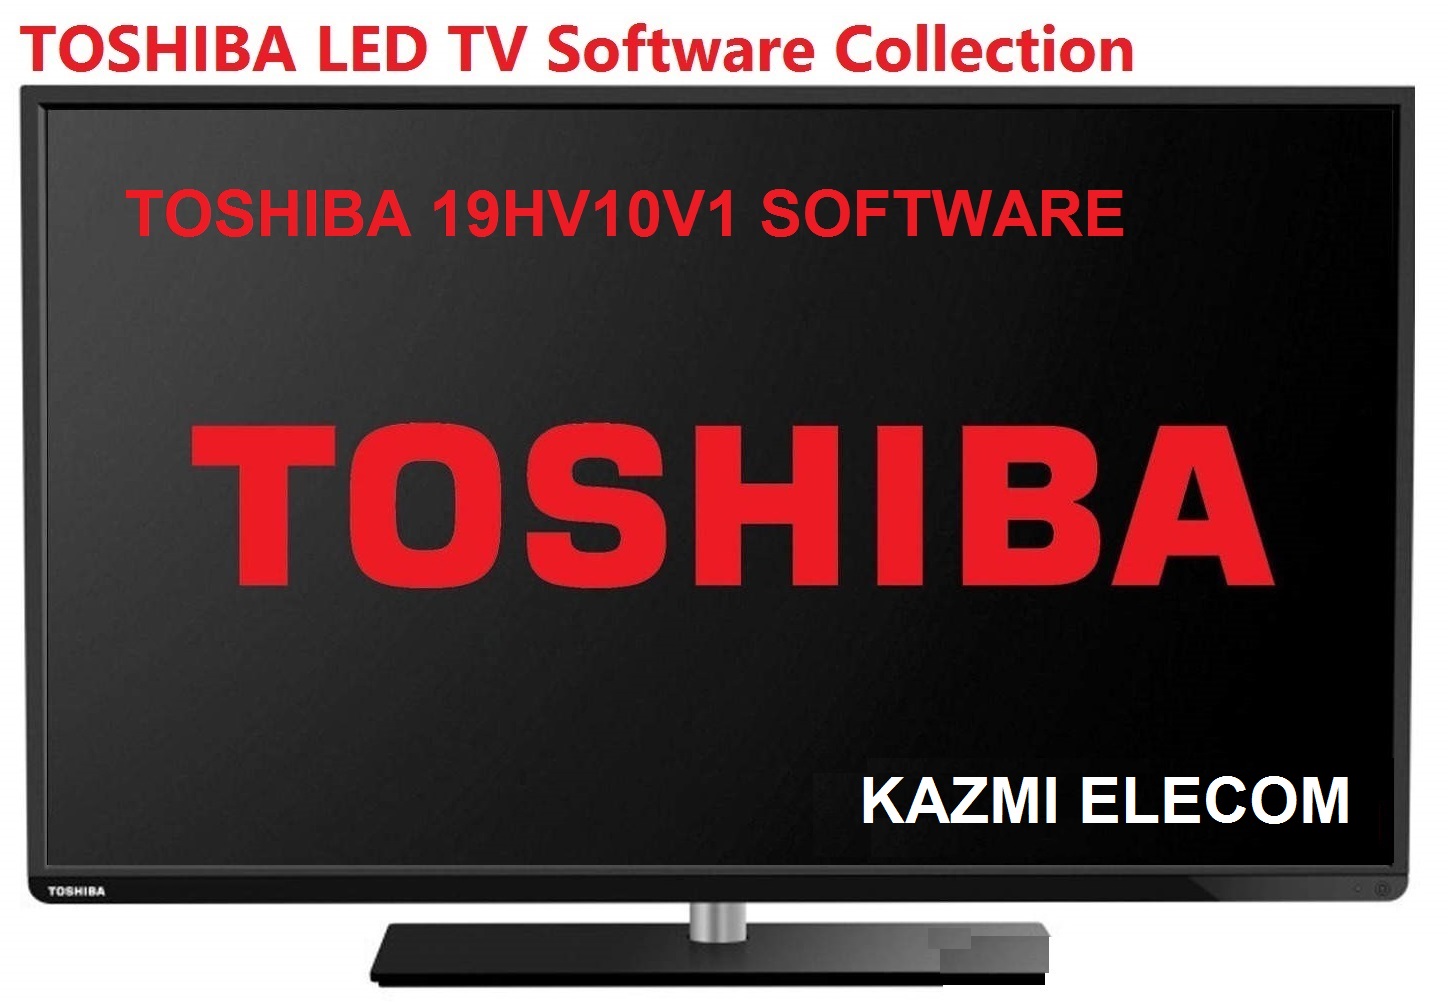 Toshiba 19Hv10V1